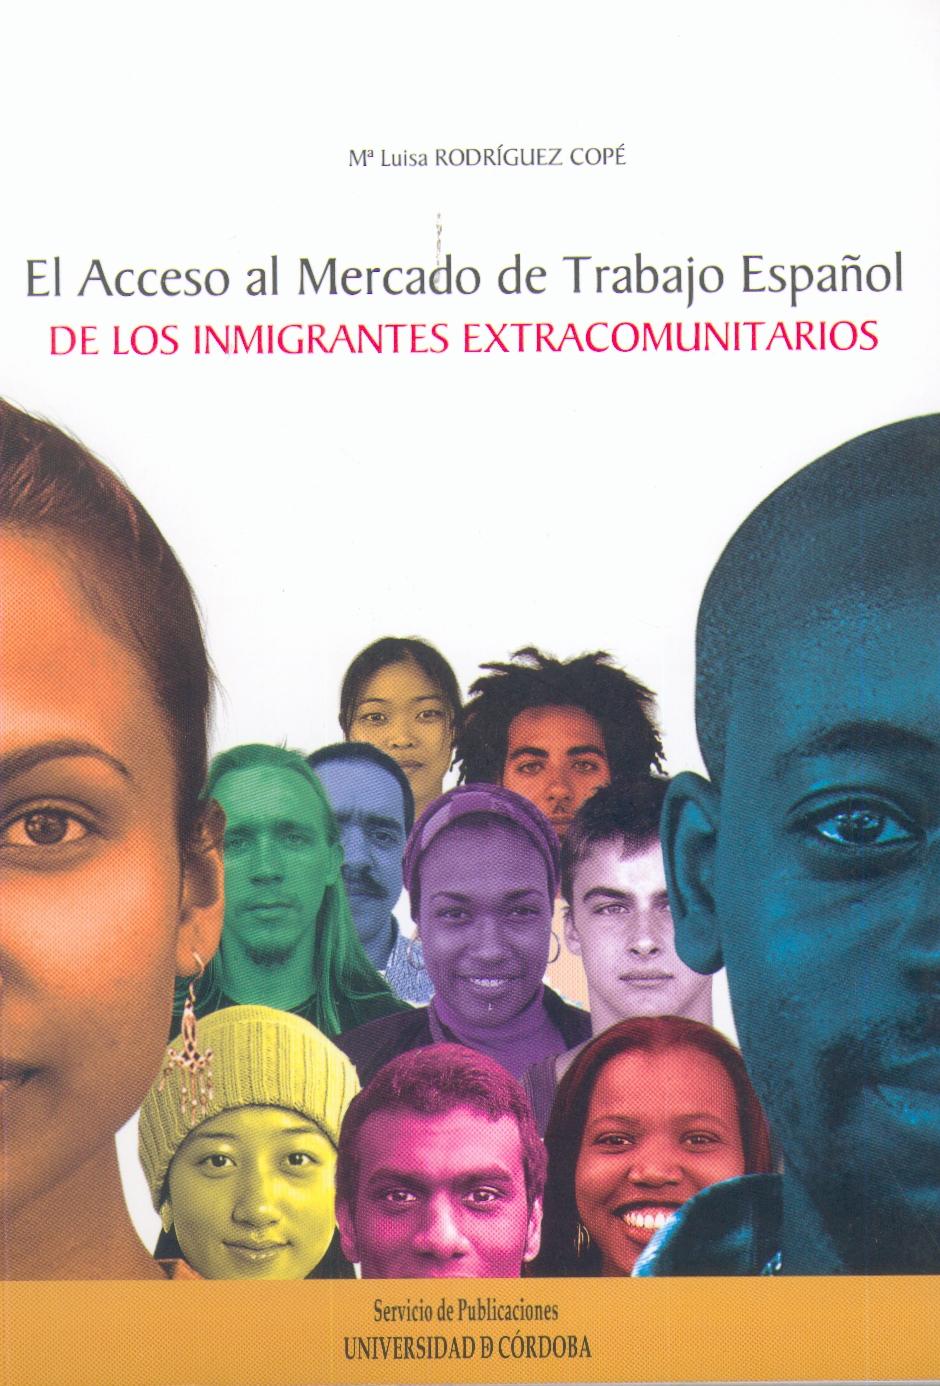 El Acceso al Mercado de Trabajo Español de los Inmigrantes Extracomunitarios.